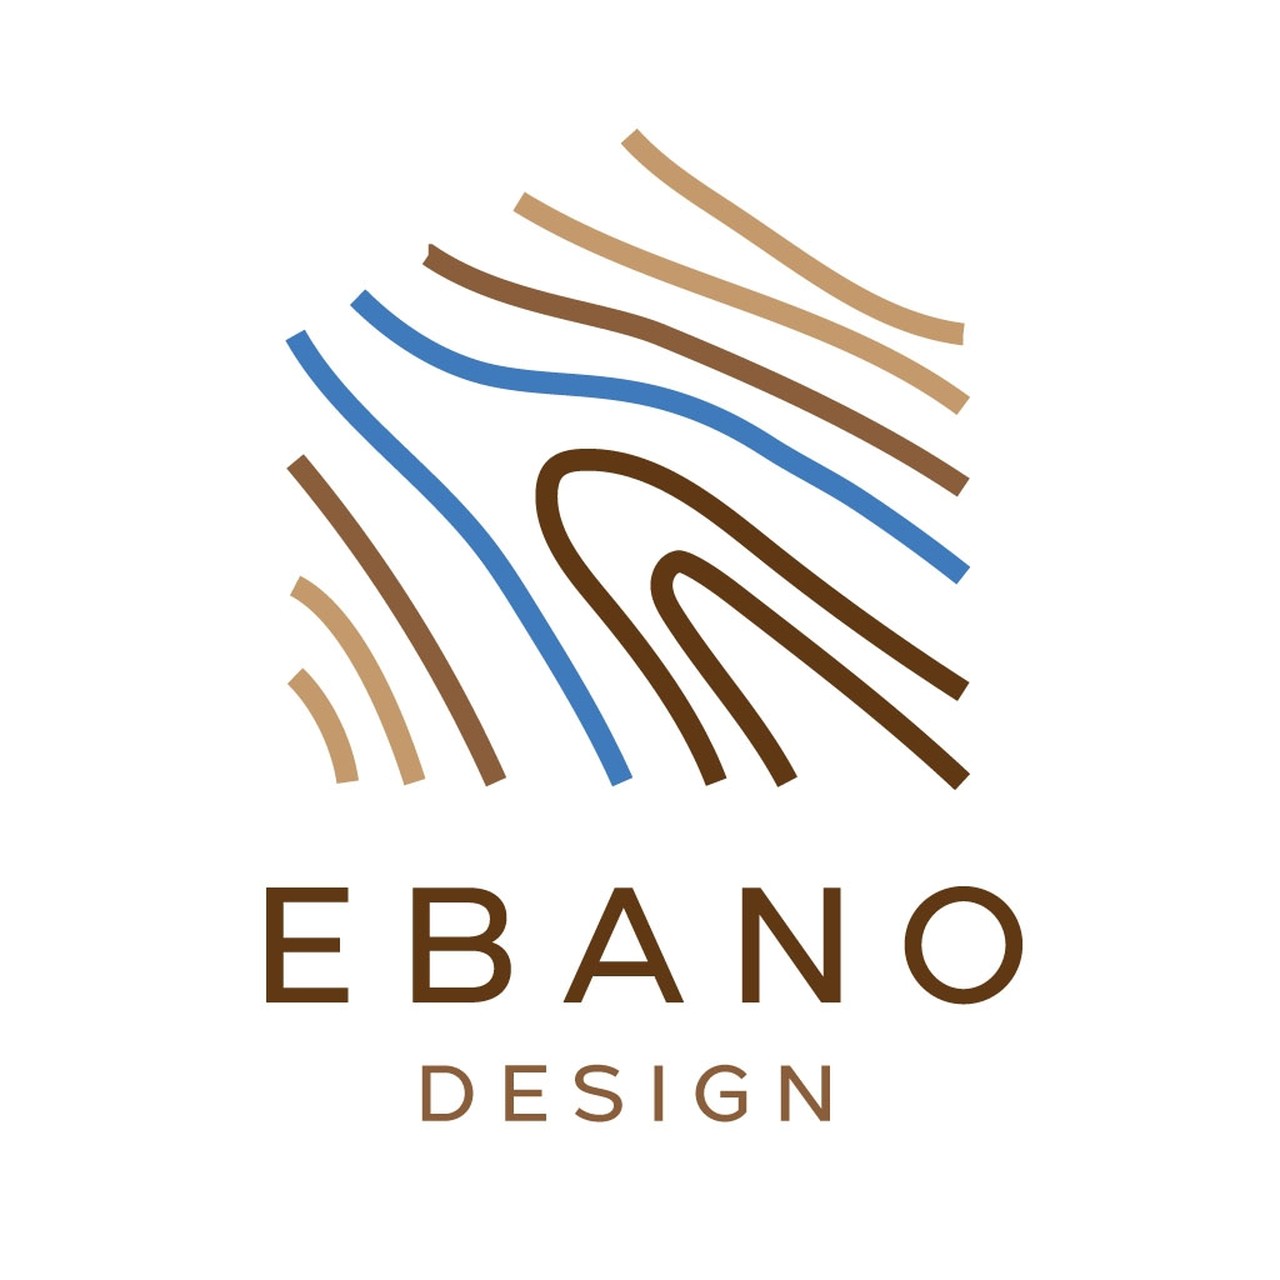 ebano-design-logo